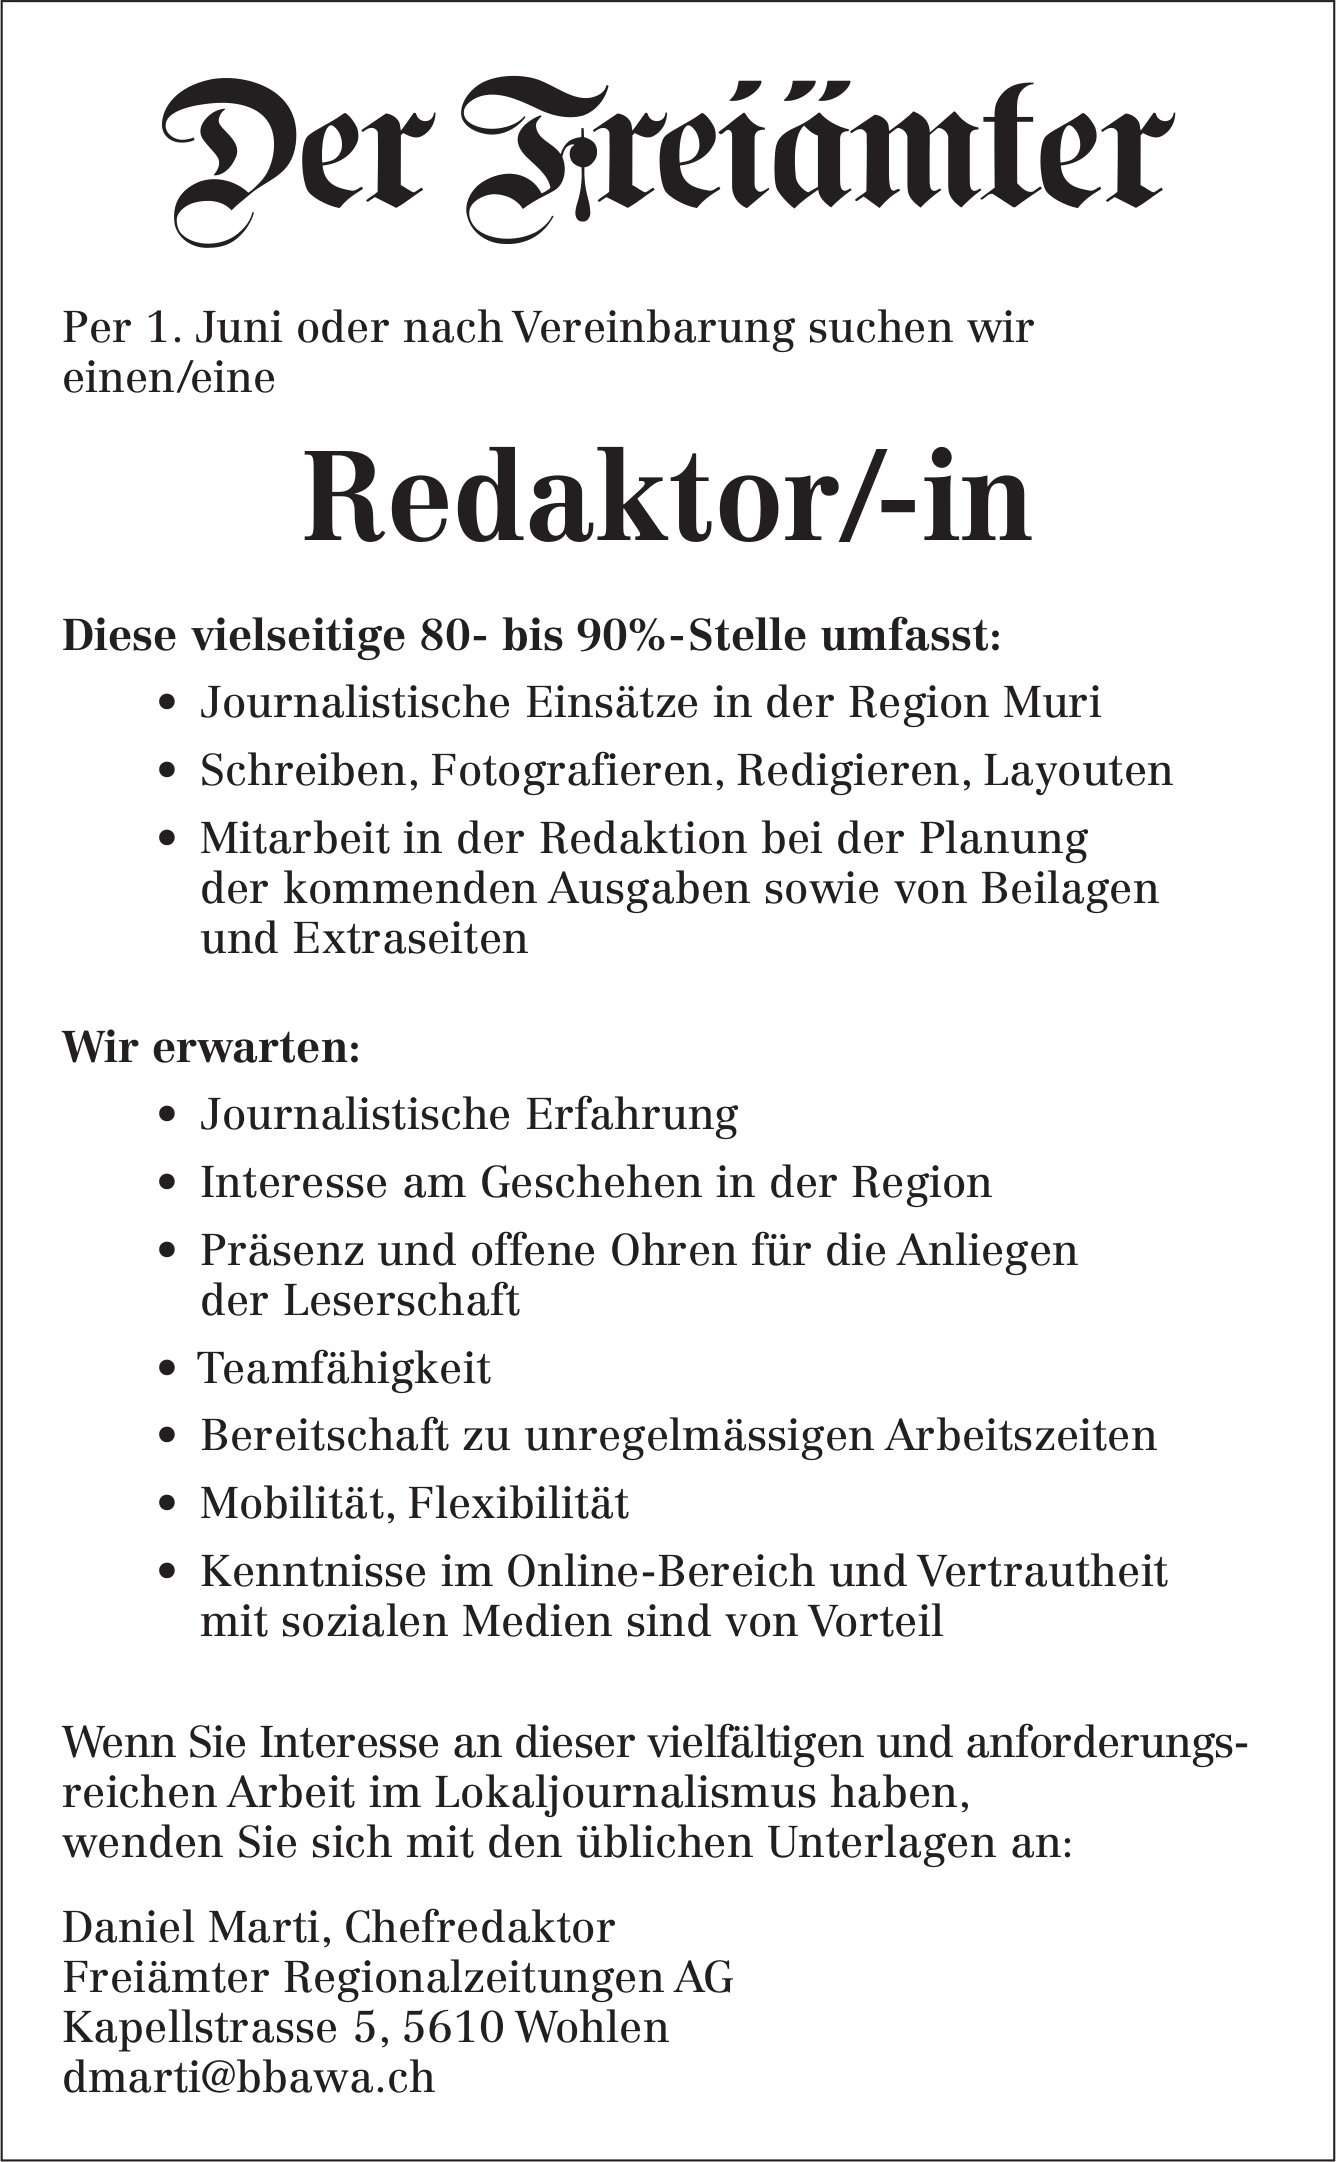 Redaktor/-in, Freiämter Regionalzeitungen AG, Wohlen, gesucht